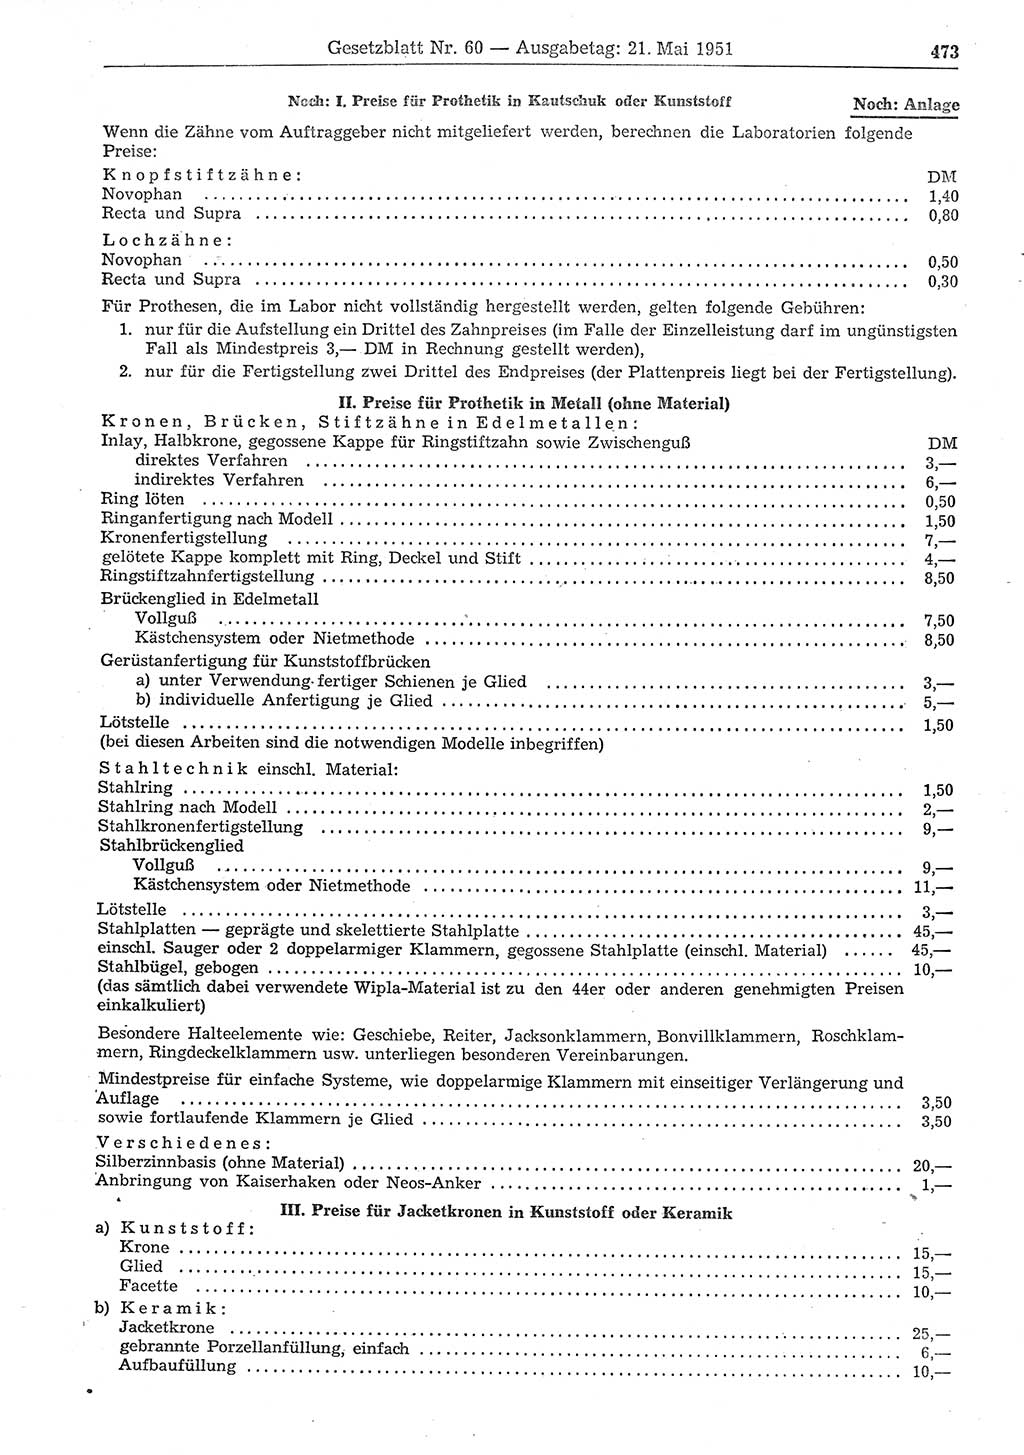 Gesetzblatt (GBl.) der Deutschen Demokratischen Republik (DDR) 1951, Seite 473 (GBl. DDR 1951, S. 473)